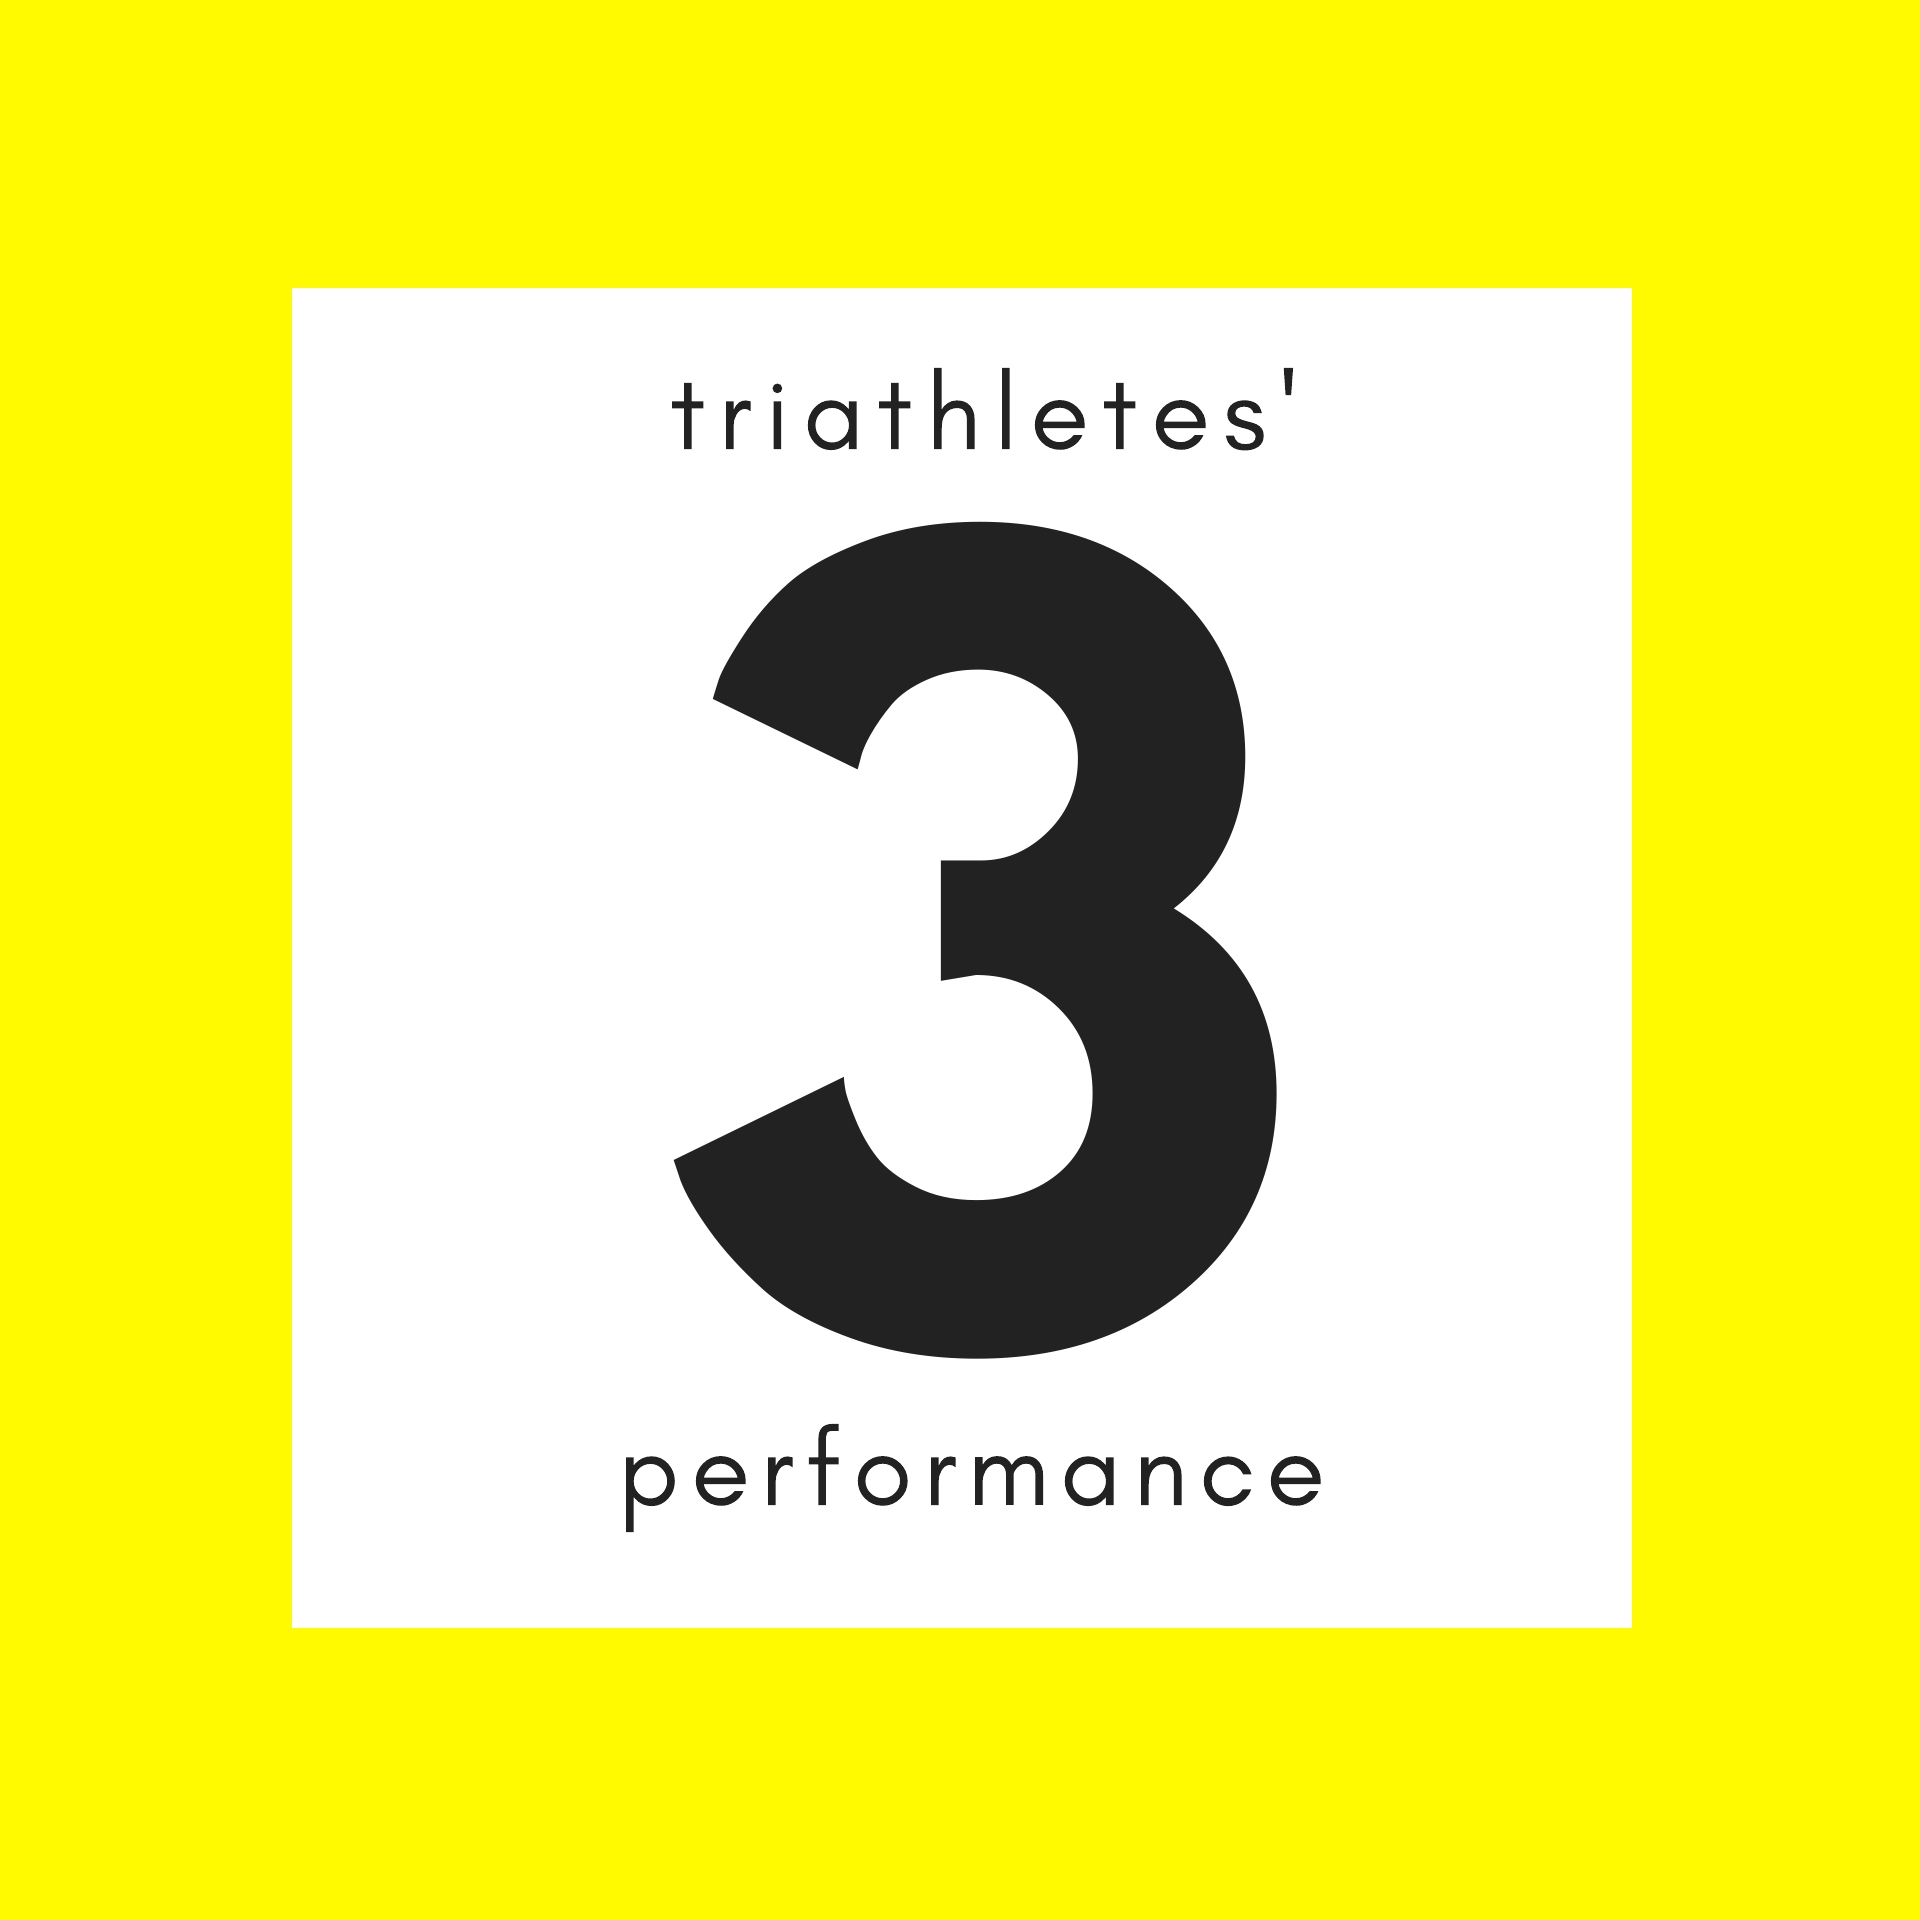 triathletes.performance